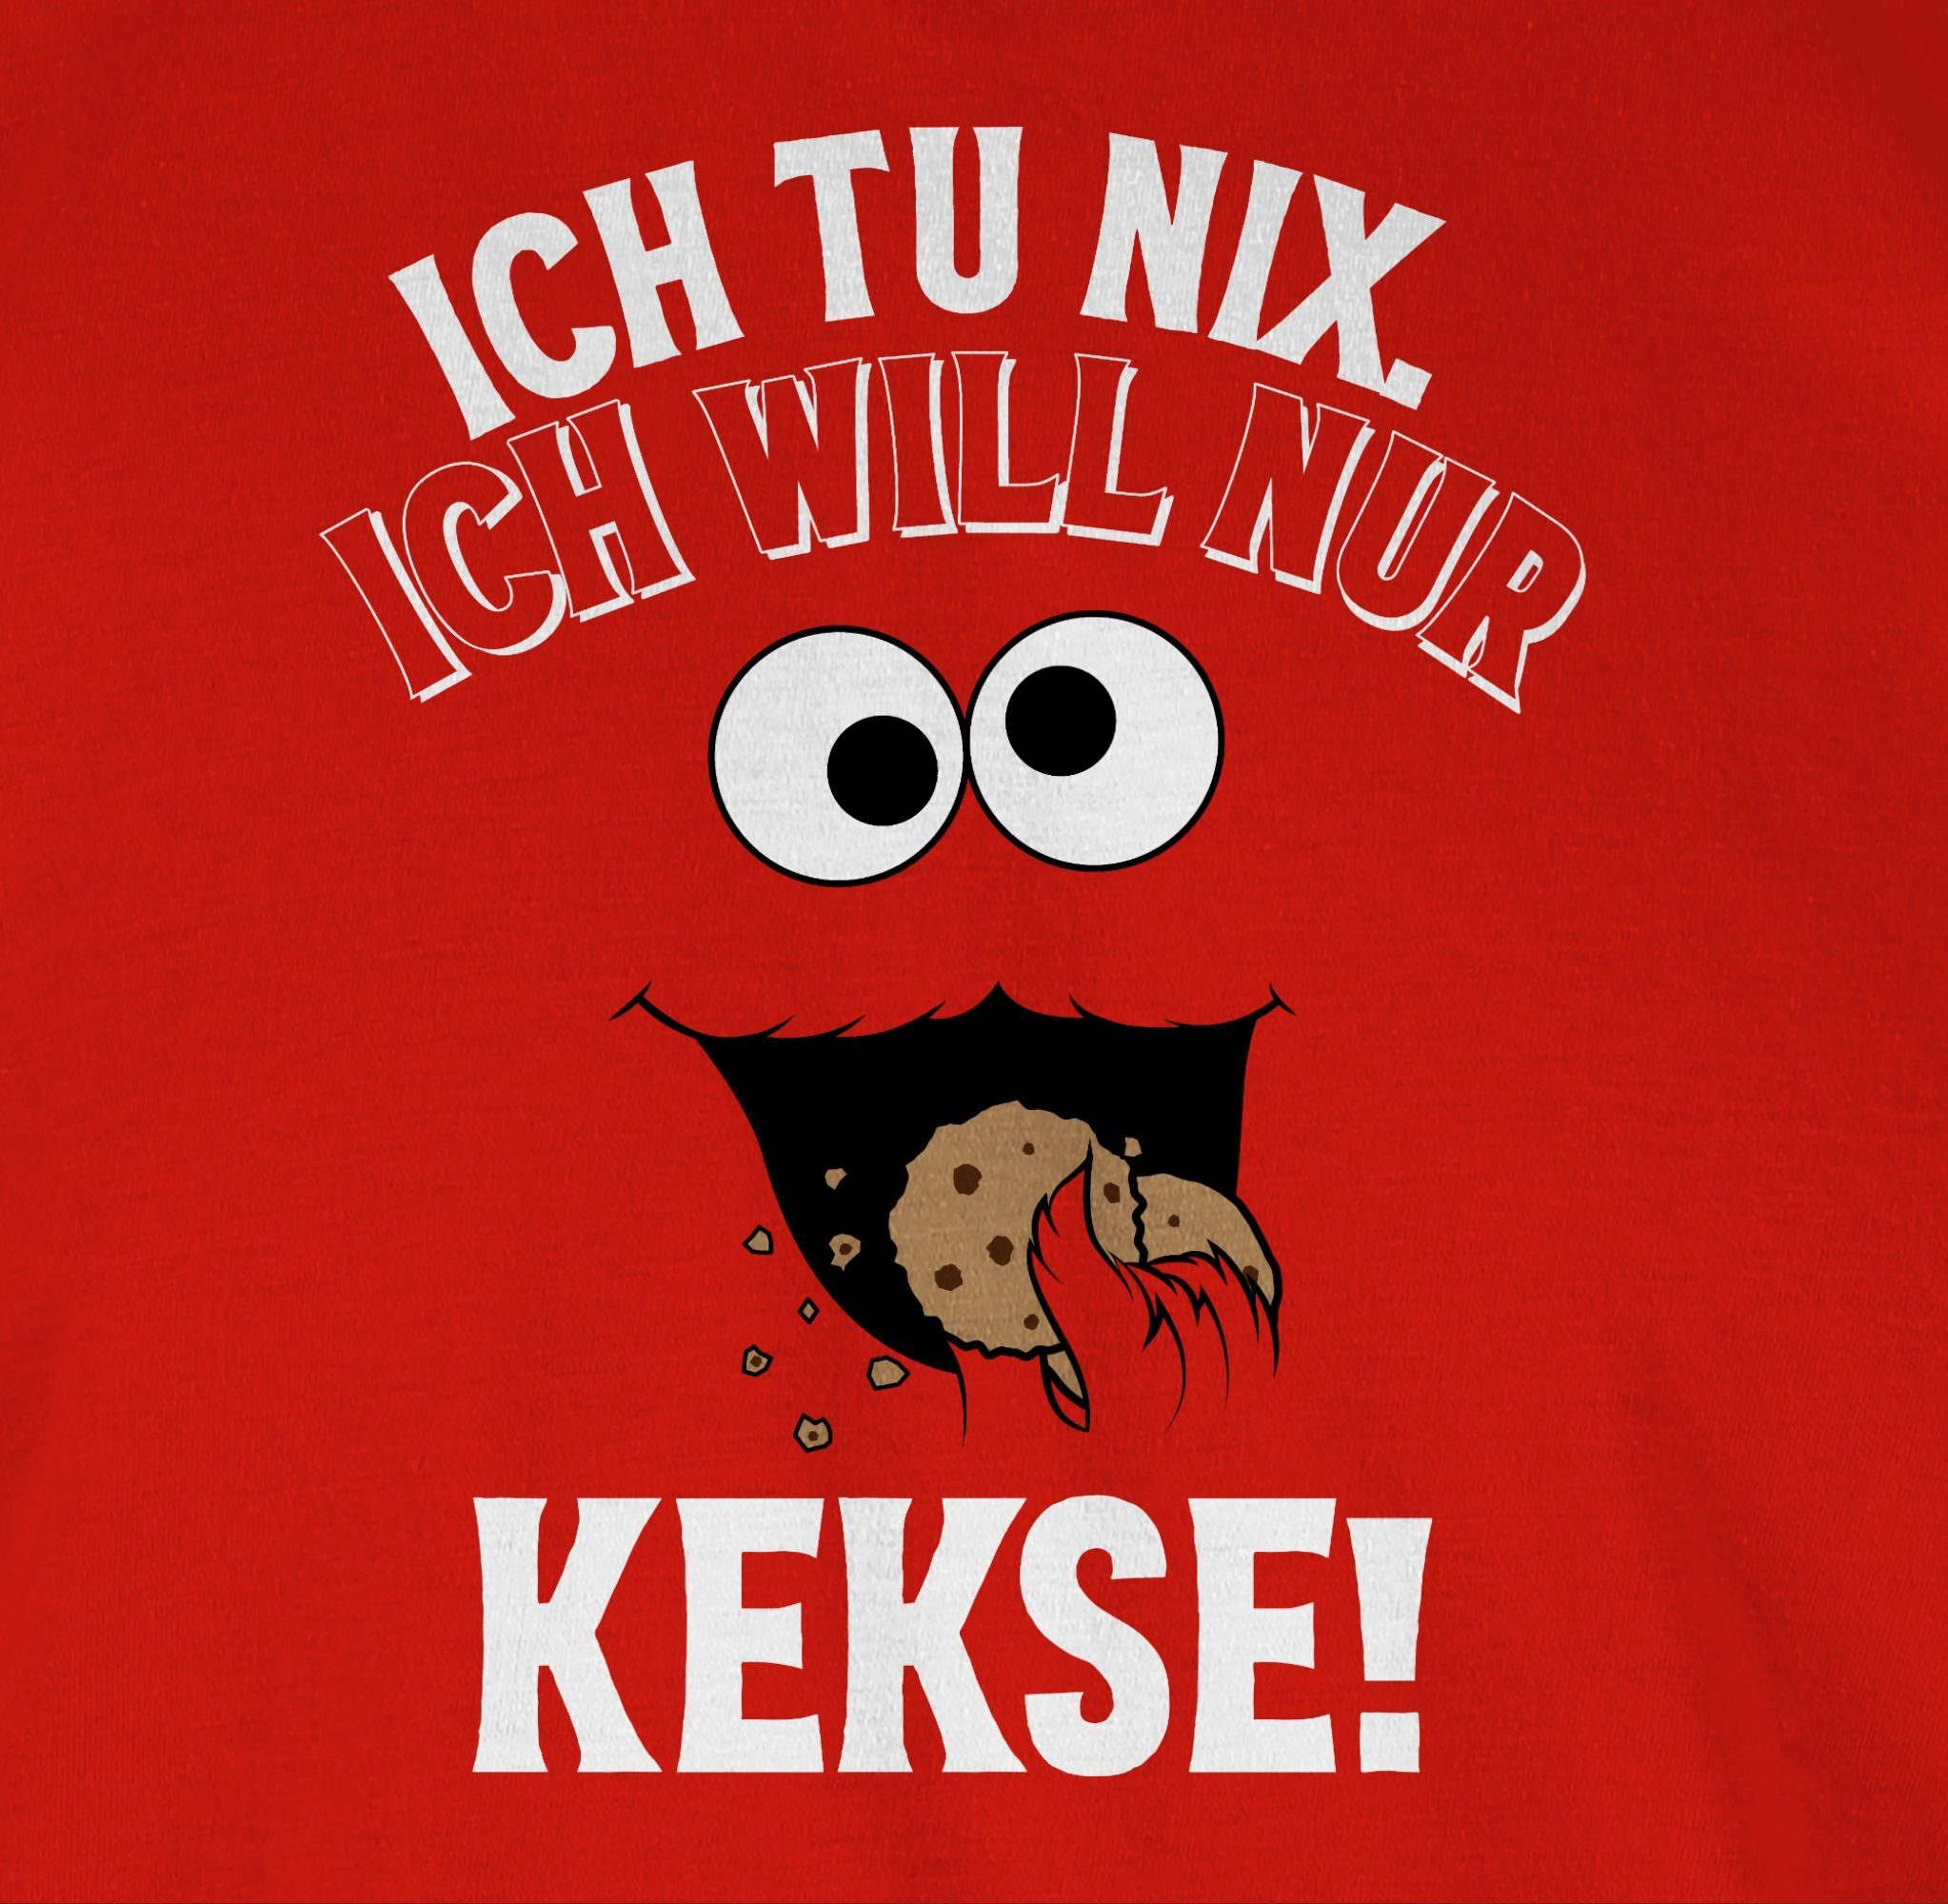 3 - nix Ich & Monster Kekse Keks Karneval Fasching nur Rot T-Shirt Keksmonster Ich will Cookie tu Shirtracer